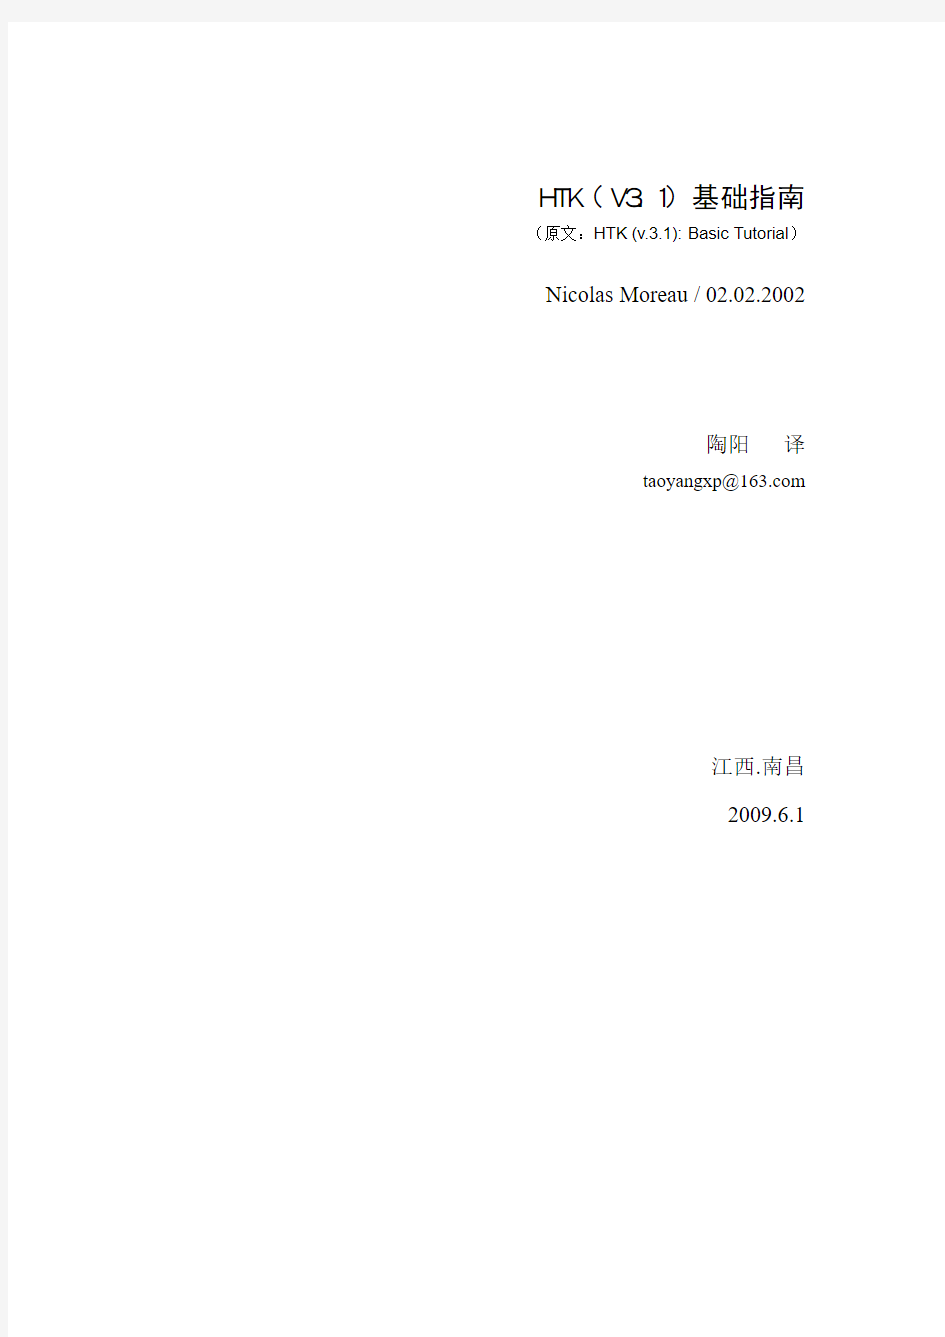 HTK(V3.1)基础指南中文版